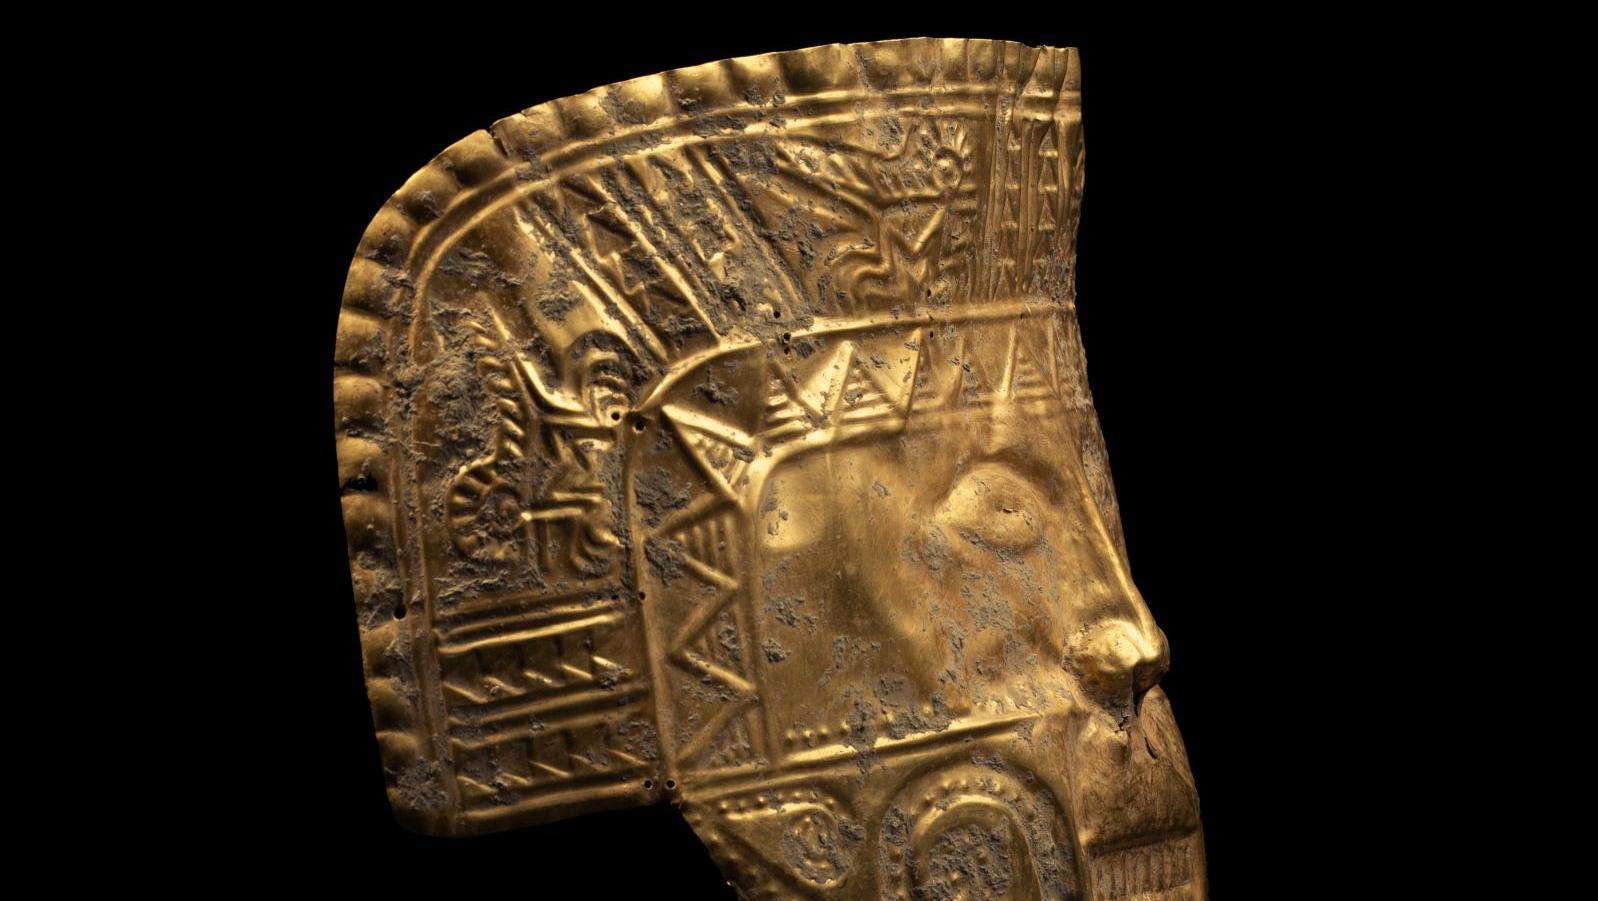 Yotoco, province de Calima, Colombie, 100 av.-200 apr. J.-C. Masque de cérémonie... L’«el dorado» de la succession Wagner